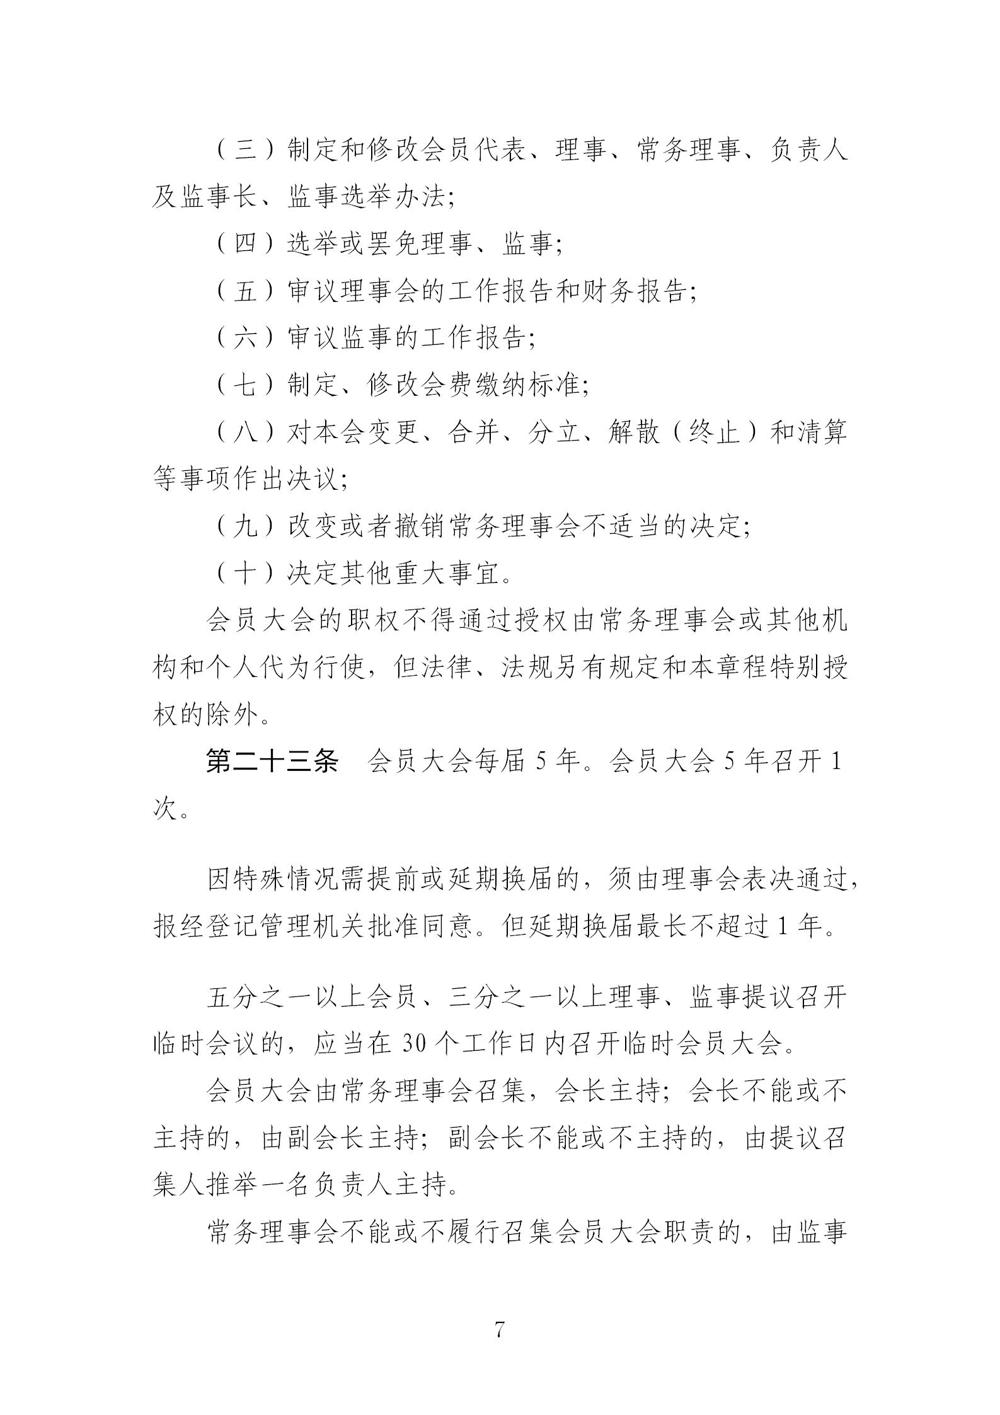 3-广东省羽毛球协会新章程20221107-根据民政厅修改意见修改_07